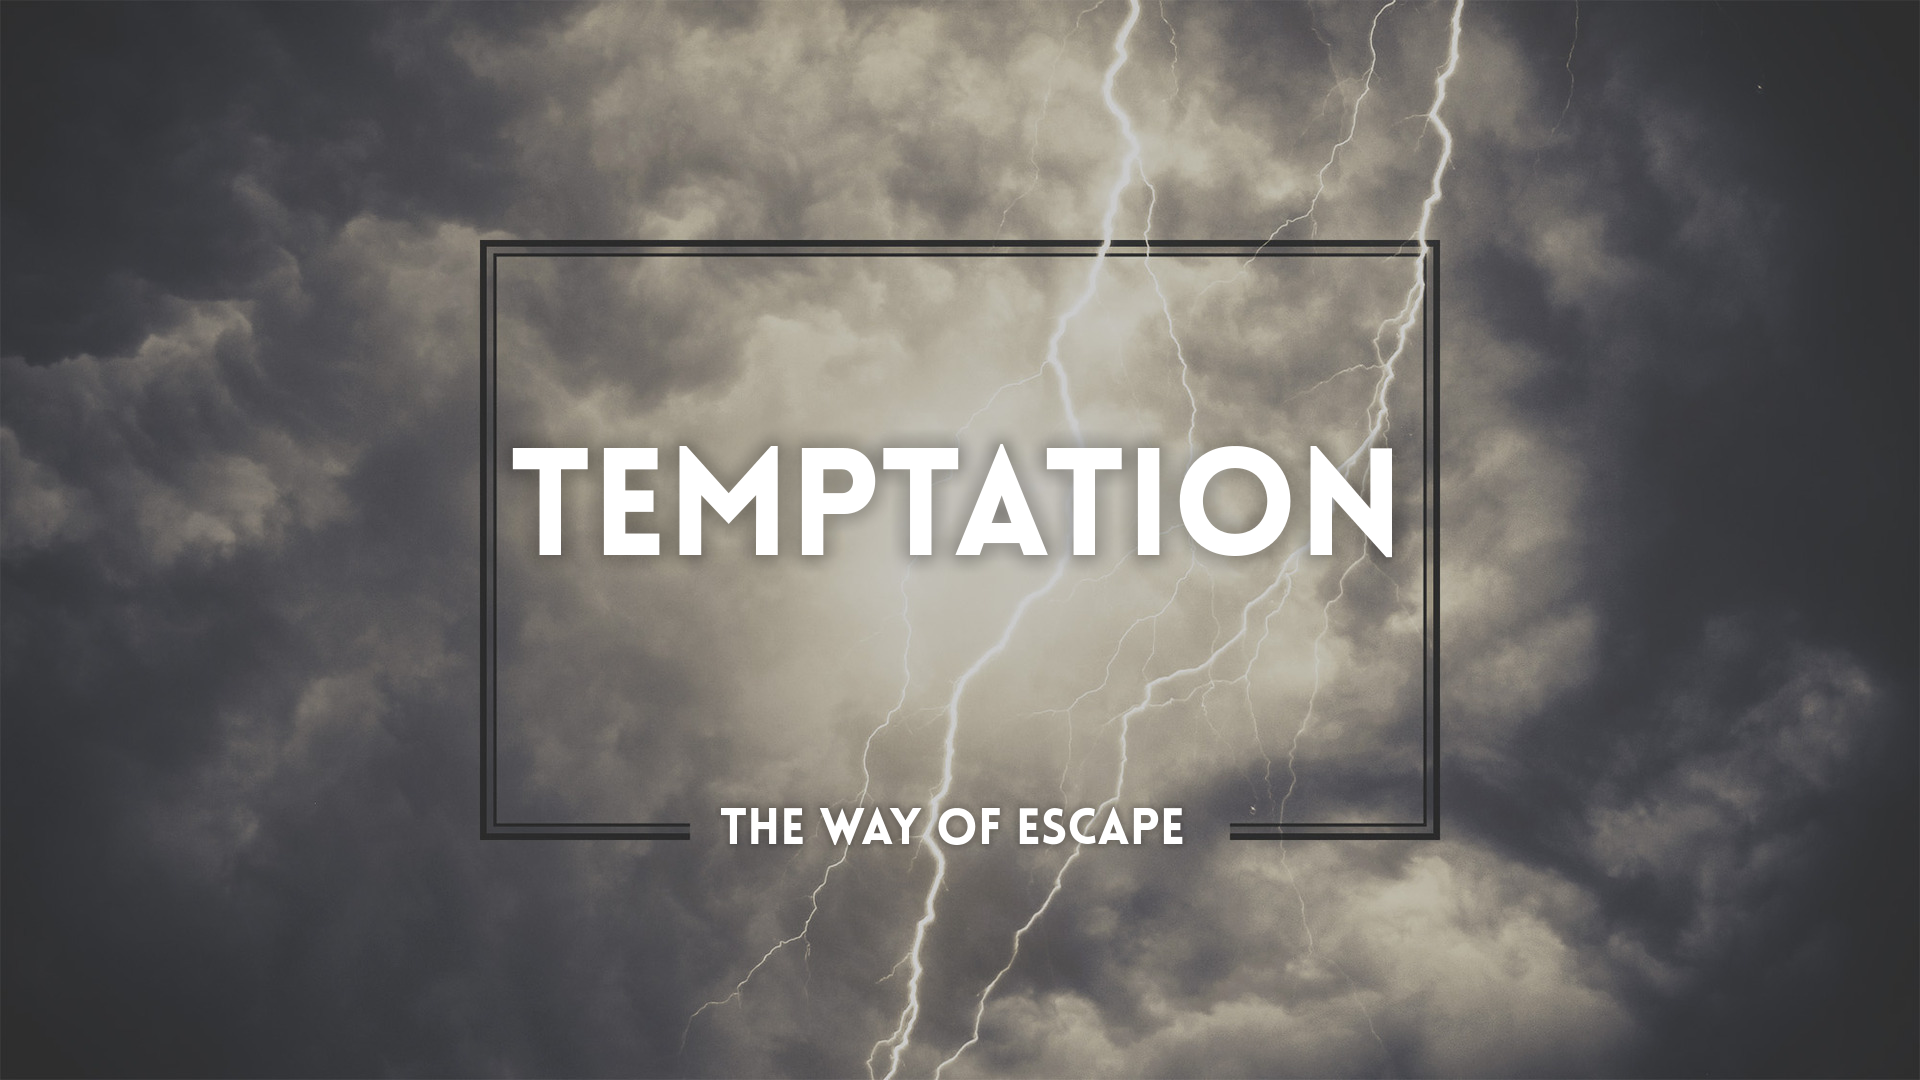 Temptation The Way Of Escape Faithlife Sermons